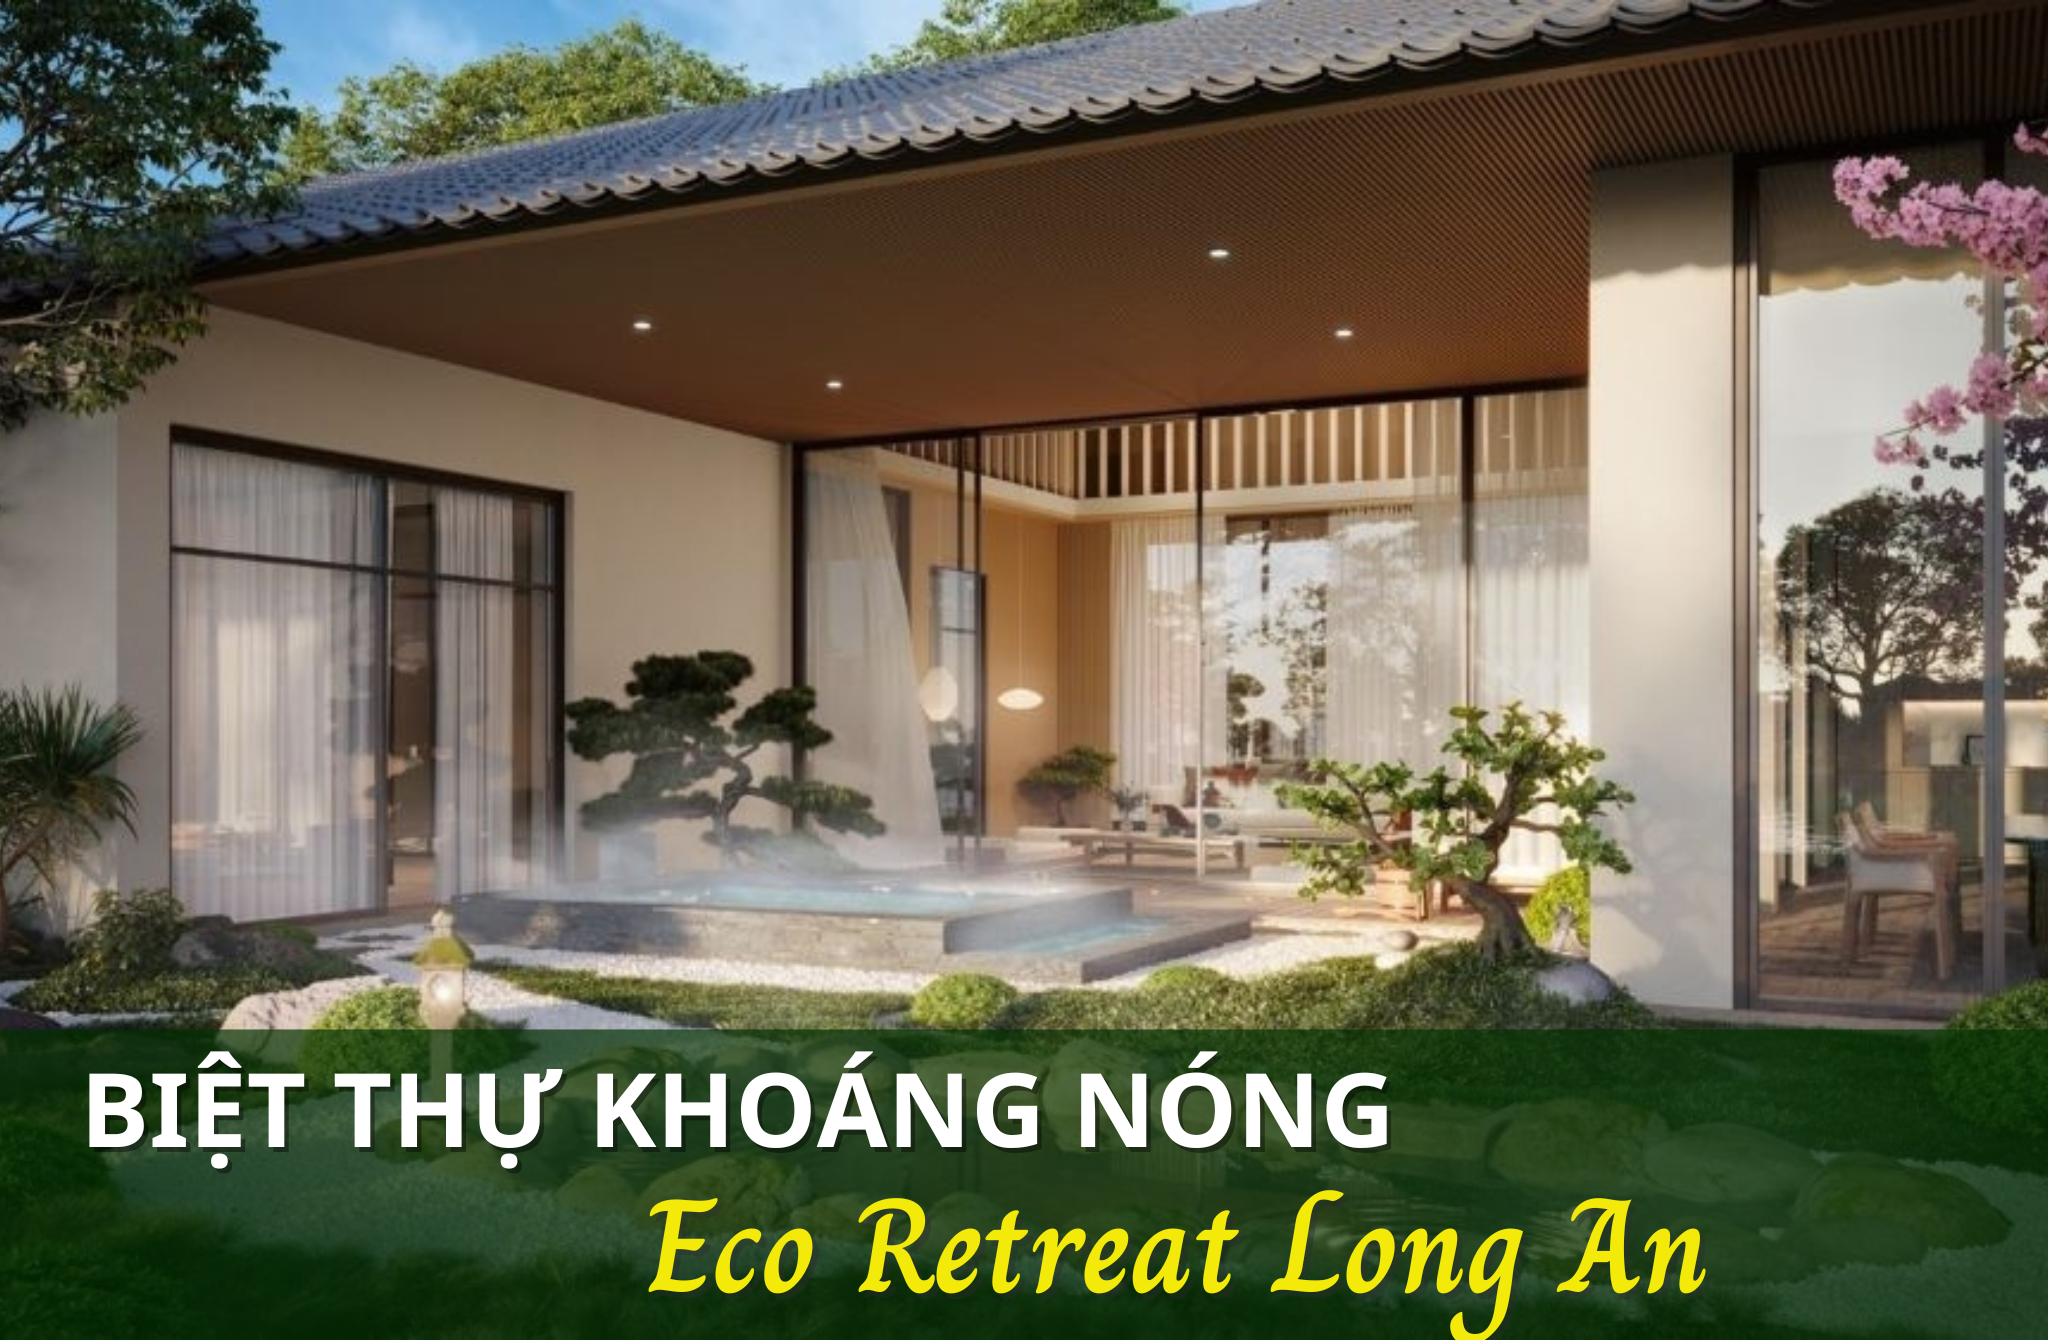 Biệt thự khoáng nóng Eco Retreat Long An – Dòng sản phẩm giới hạn, dành cho chủ nhân tinh hoa